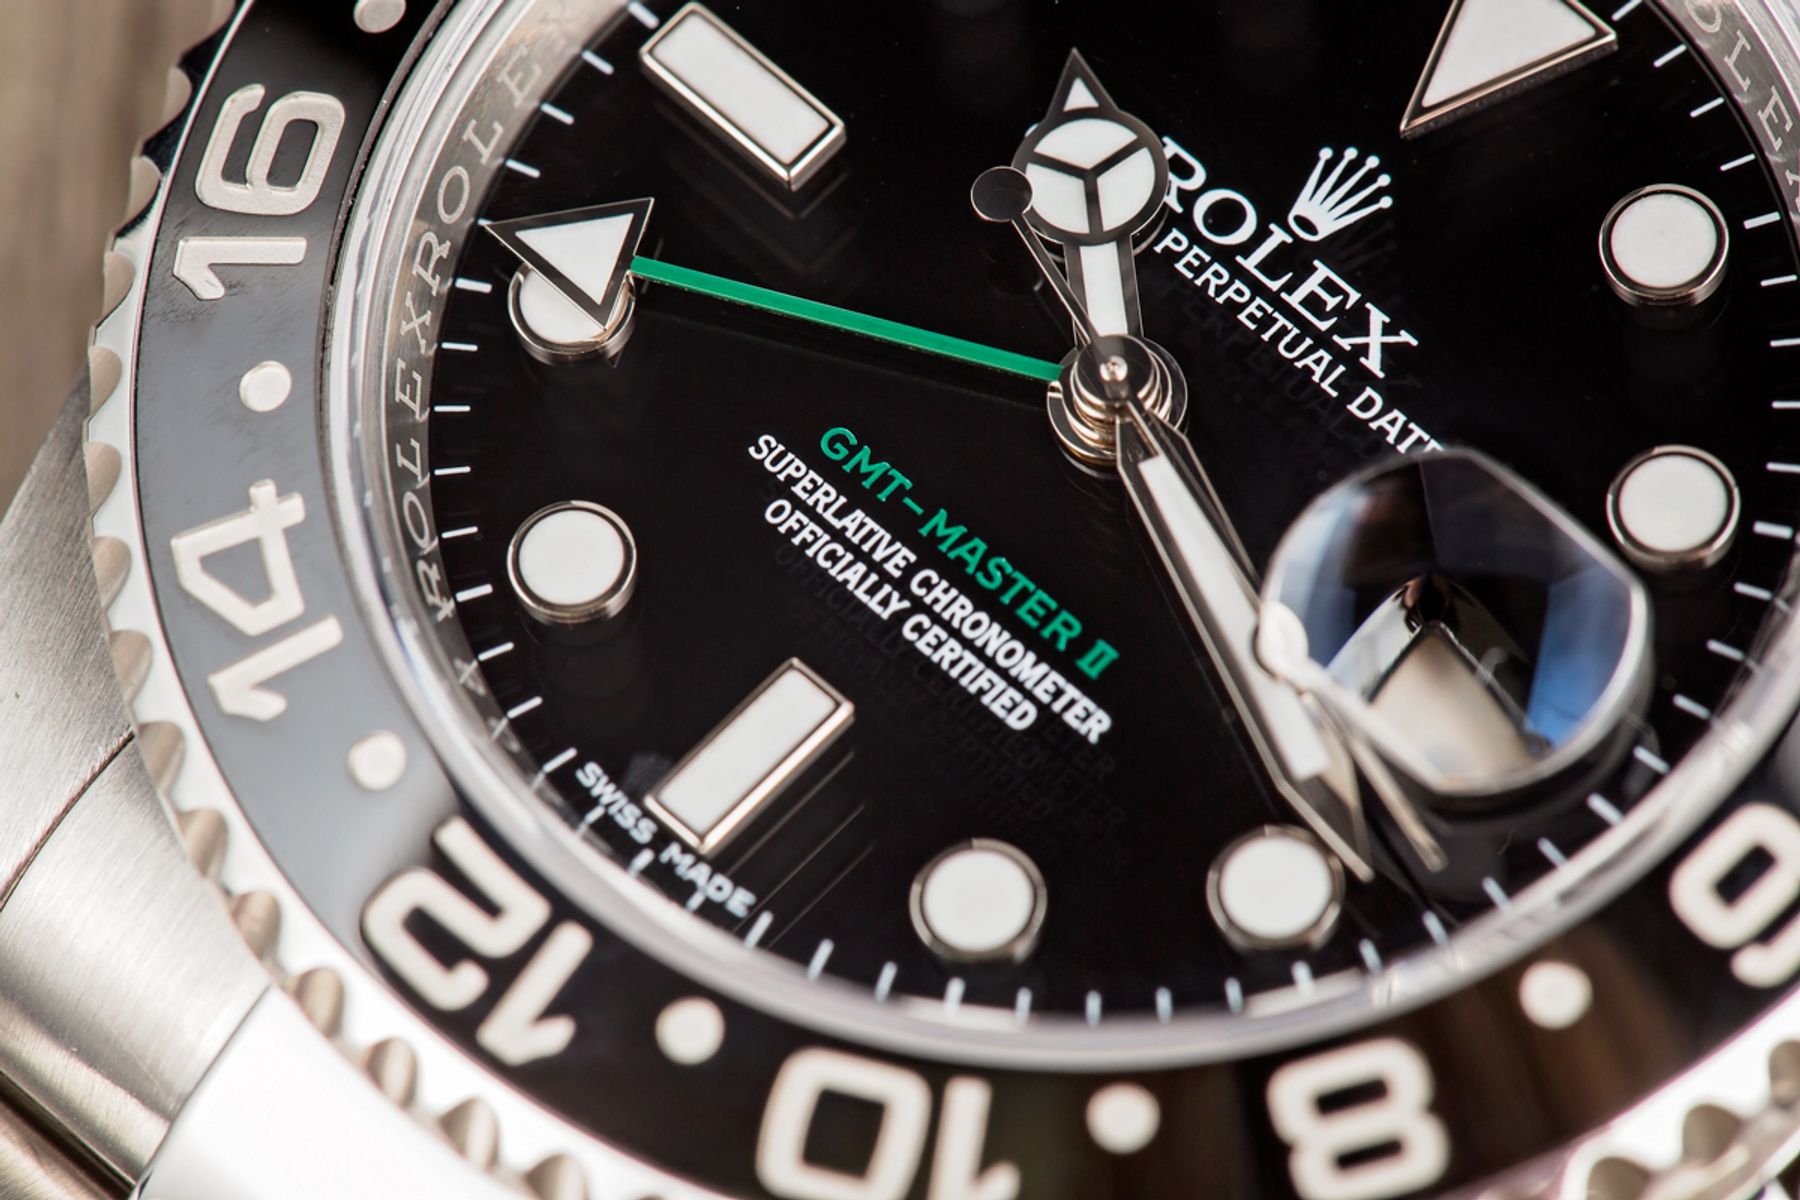 Rolex GMT-Master II 126720VTNR Green Bezel Review